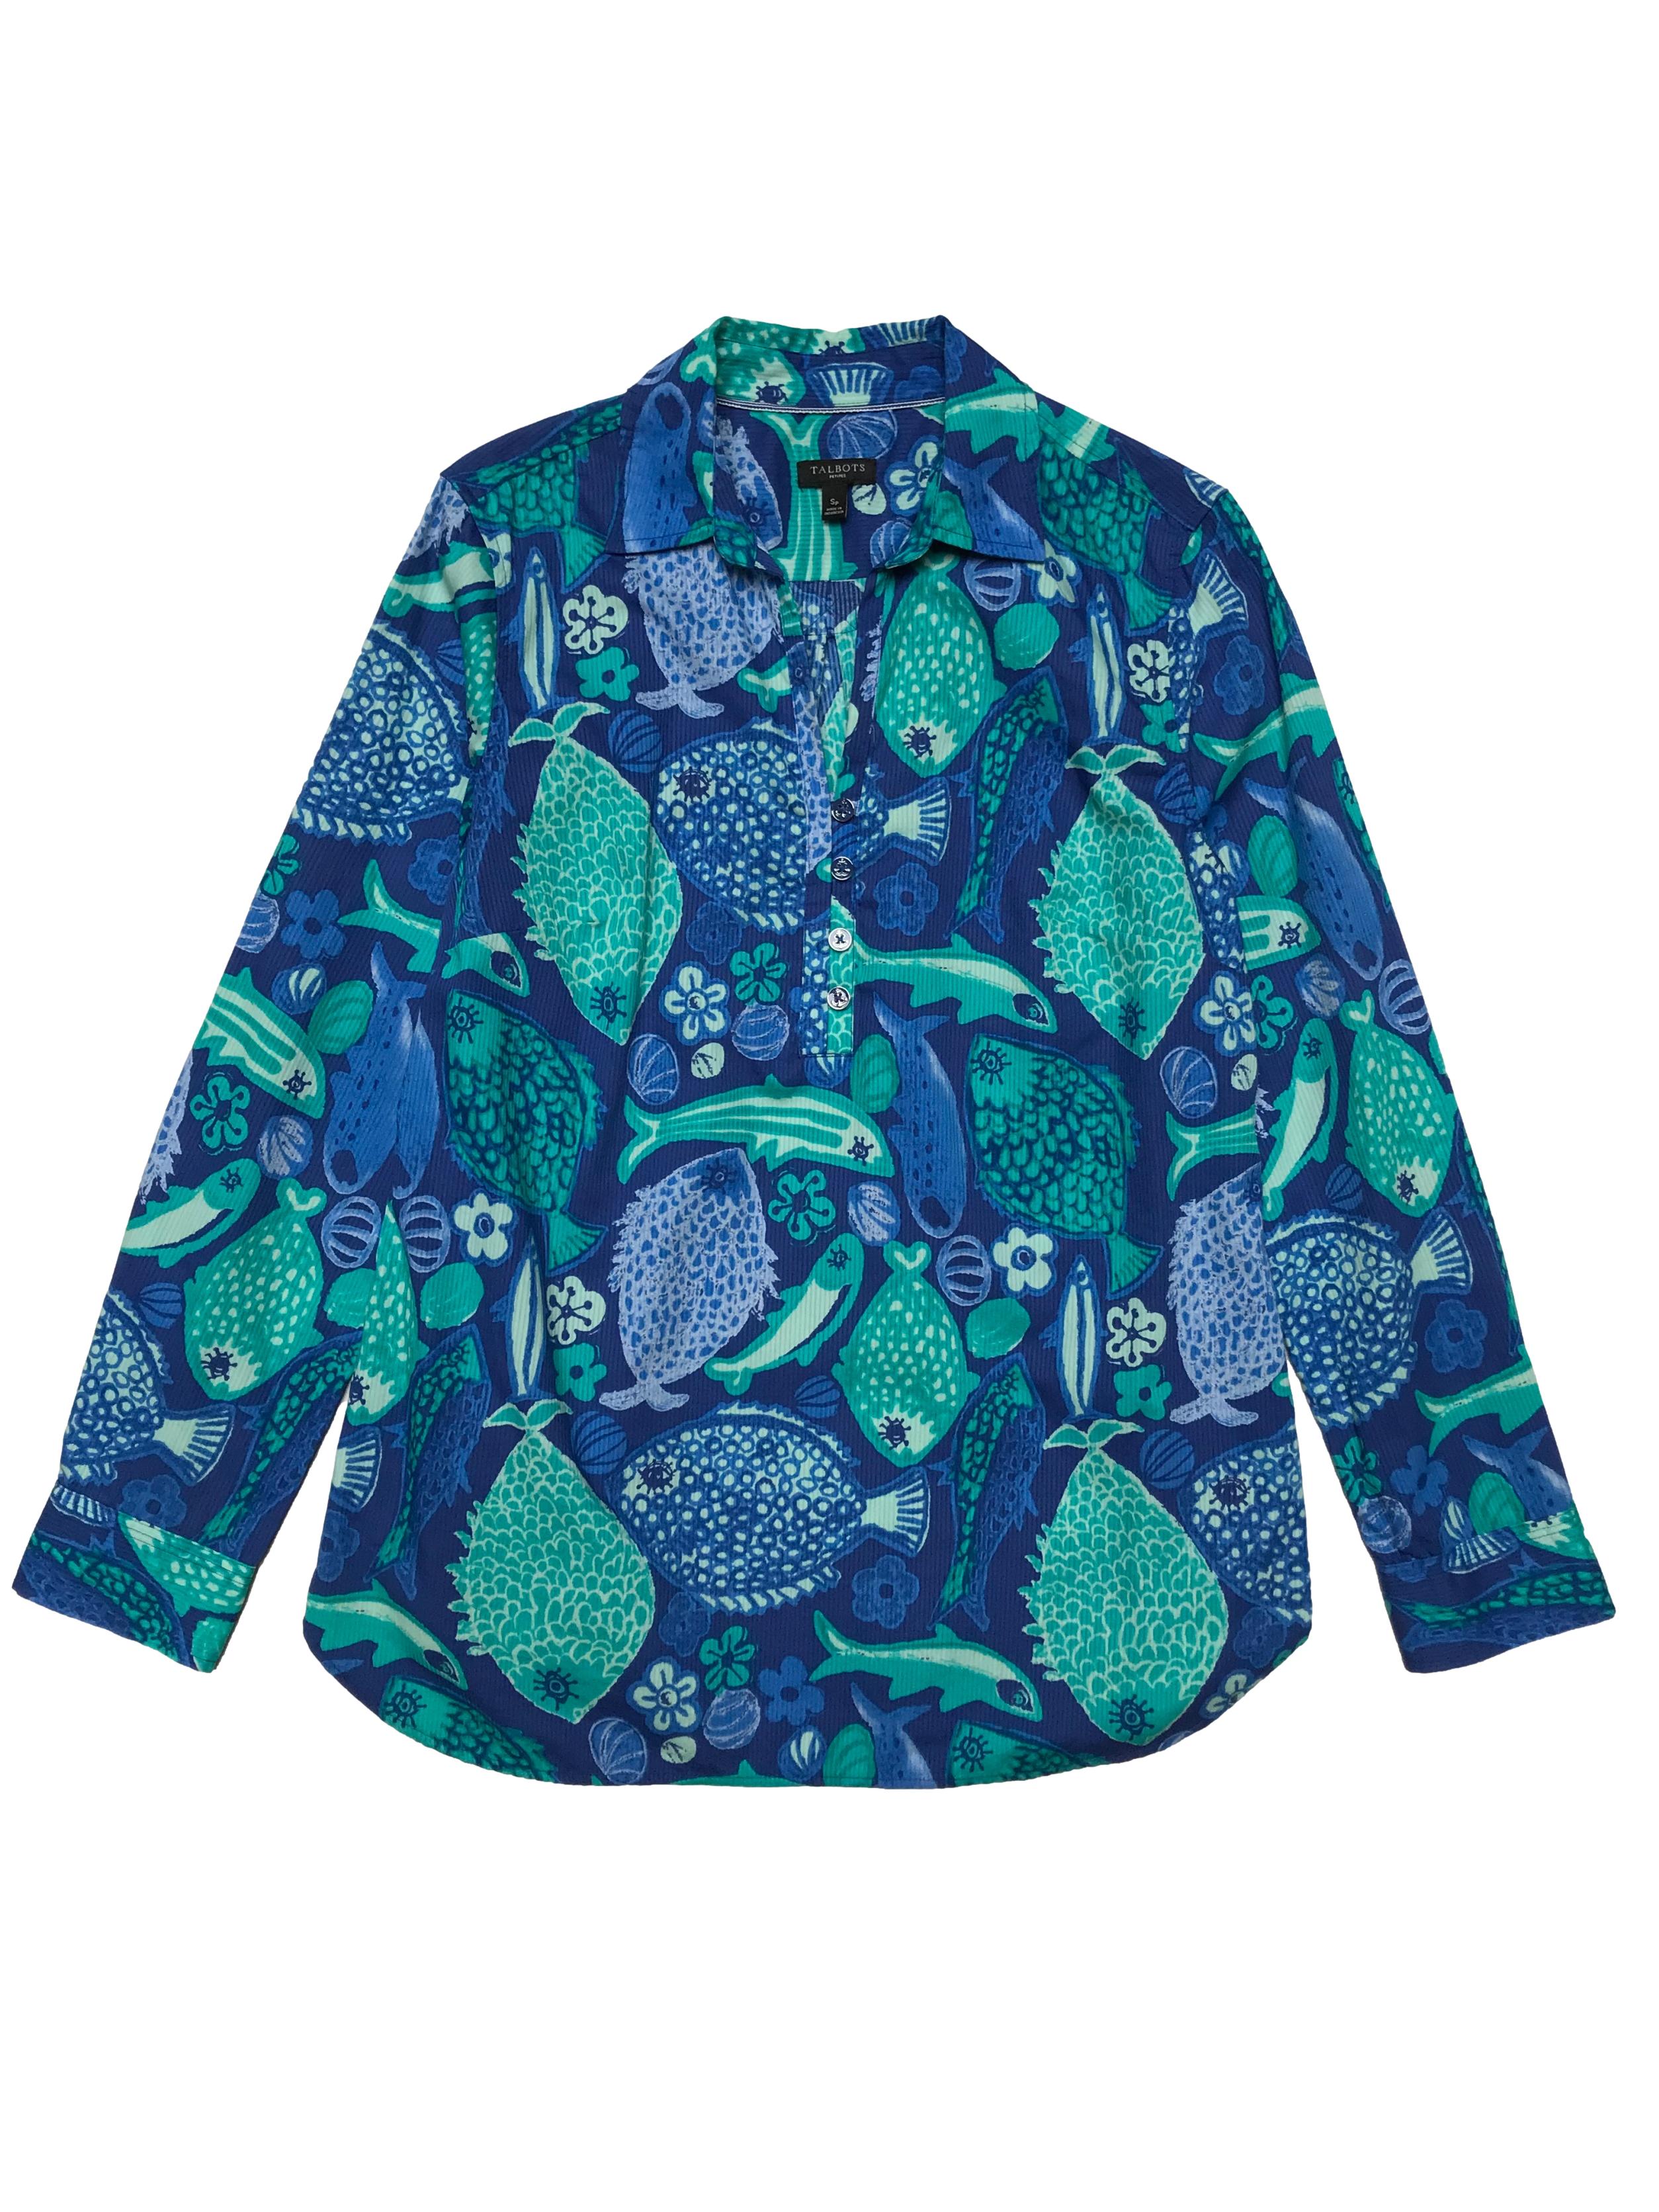 Blusa Talbots 100% algodón con textura en líneas, estampado de peces y flores de tonos azules, con botones en el pecho, es suelta. Busto 98cm Largo 65cm. Precio original s/ 290